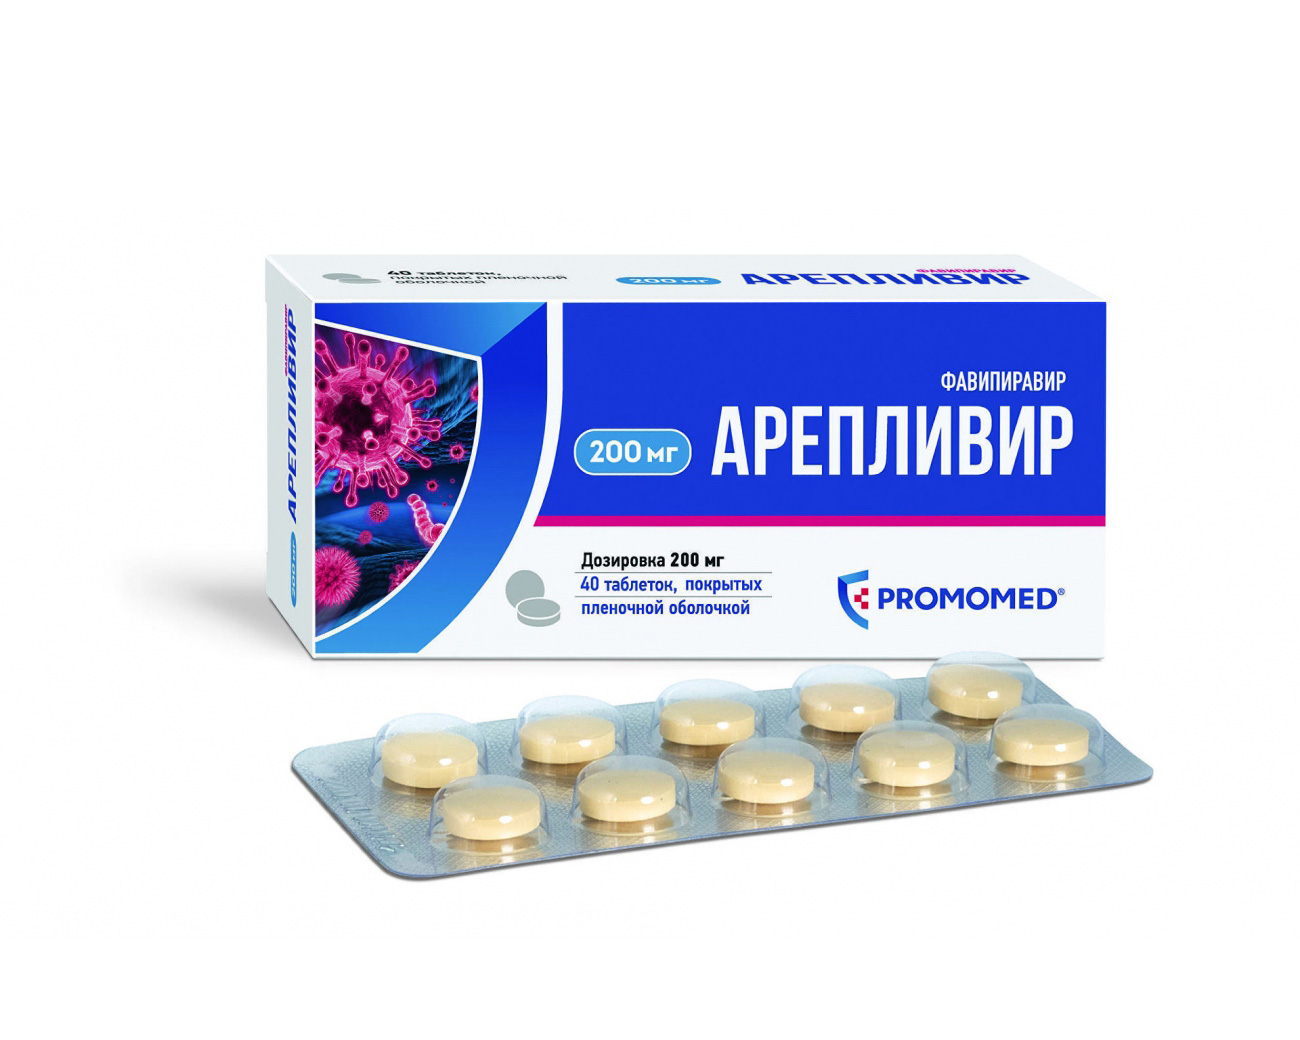 Арепливир, разработанный «Промомед» для лечения короновирусной инфекции, был зарегистрирован в Узбекистане